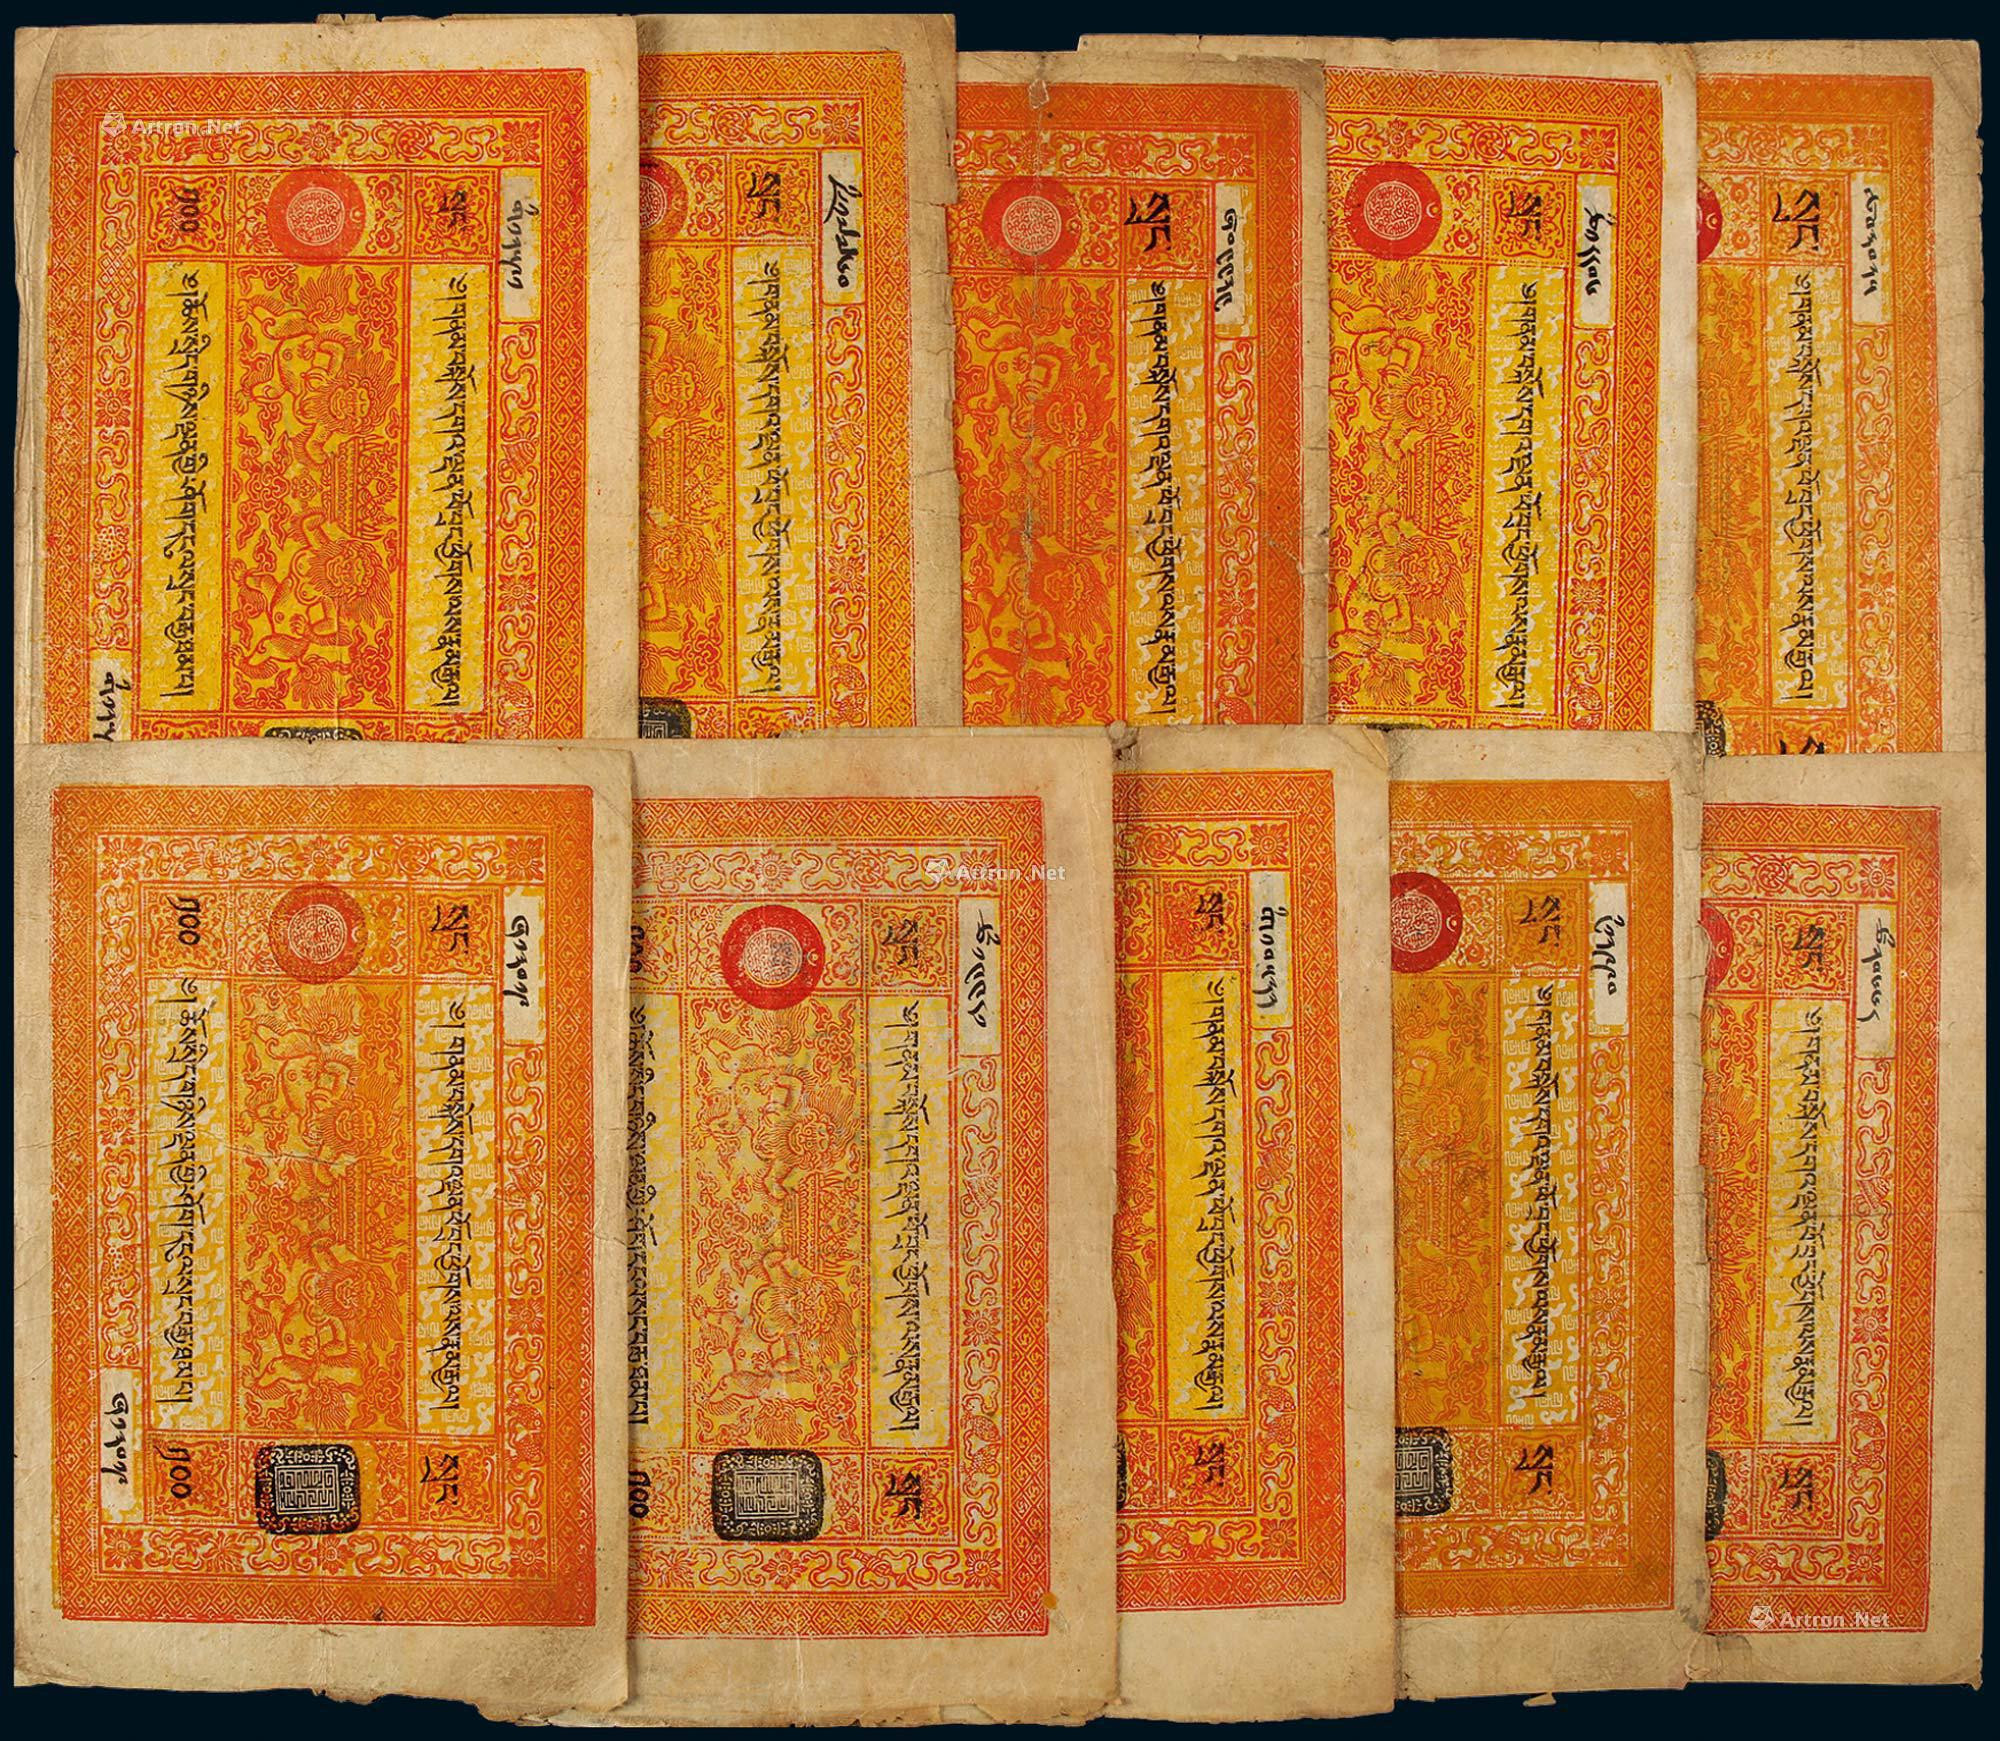 1941年西藏纸币壹佰两一组十枚